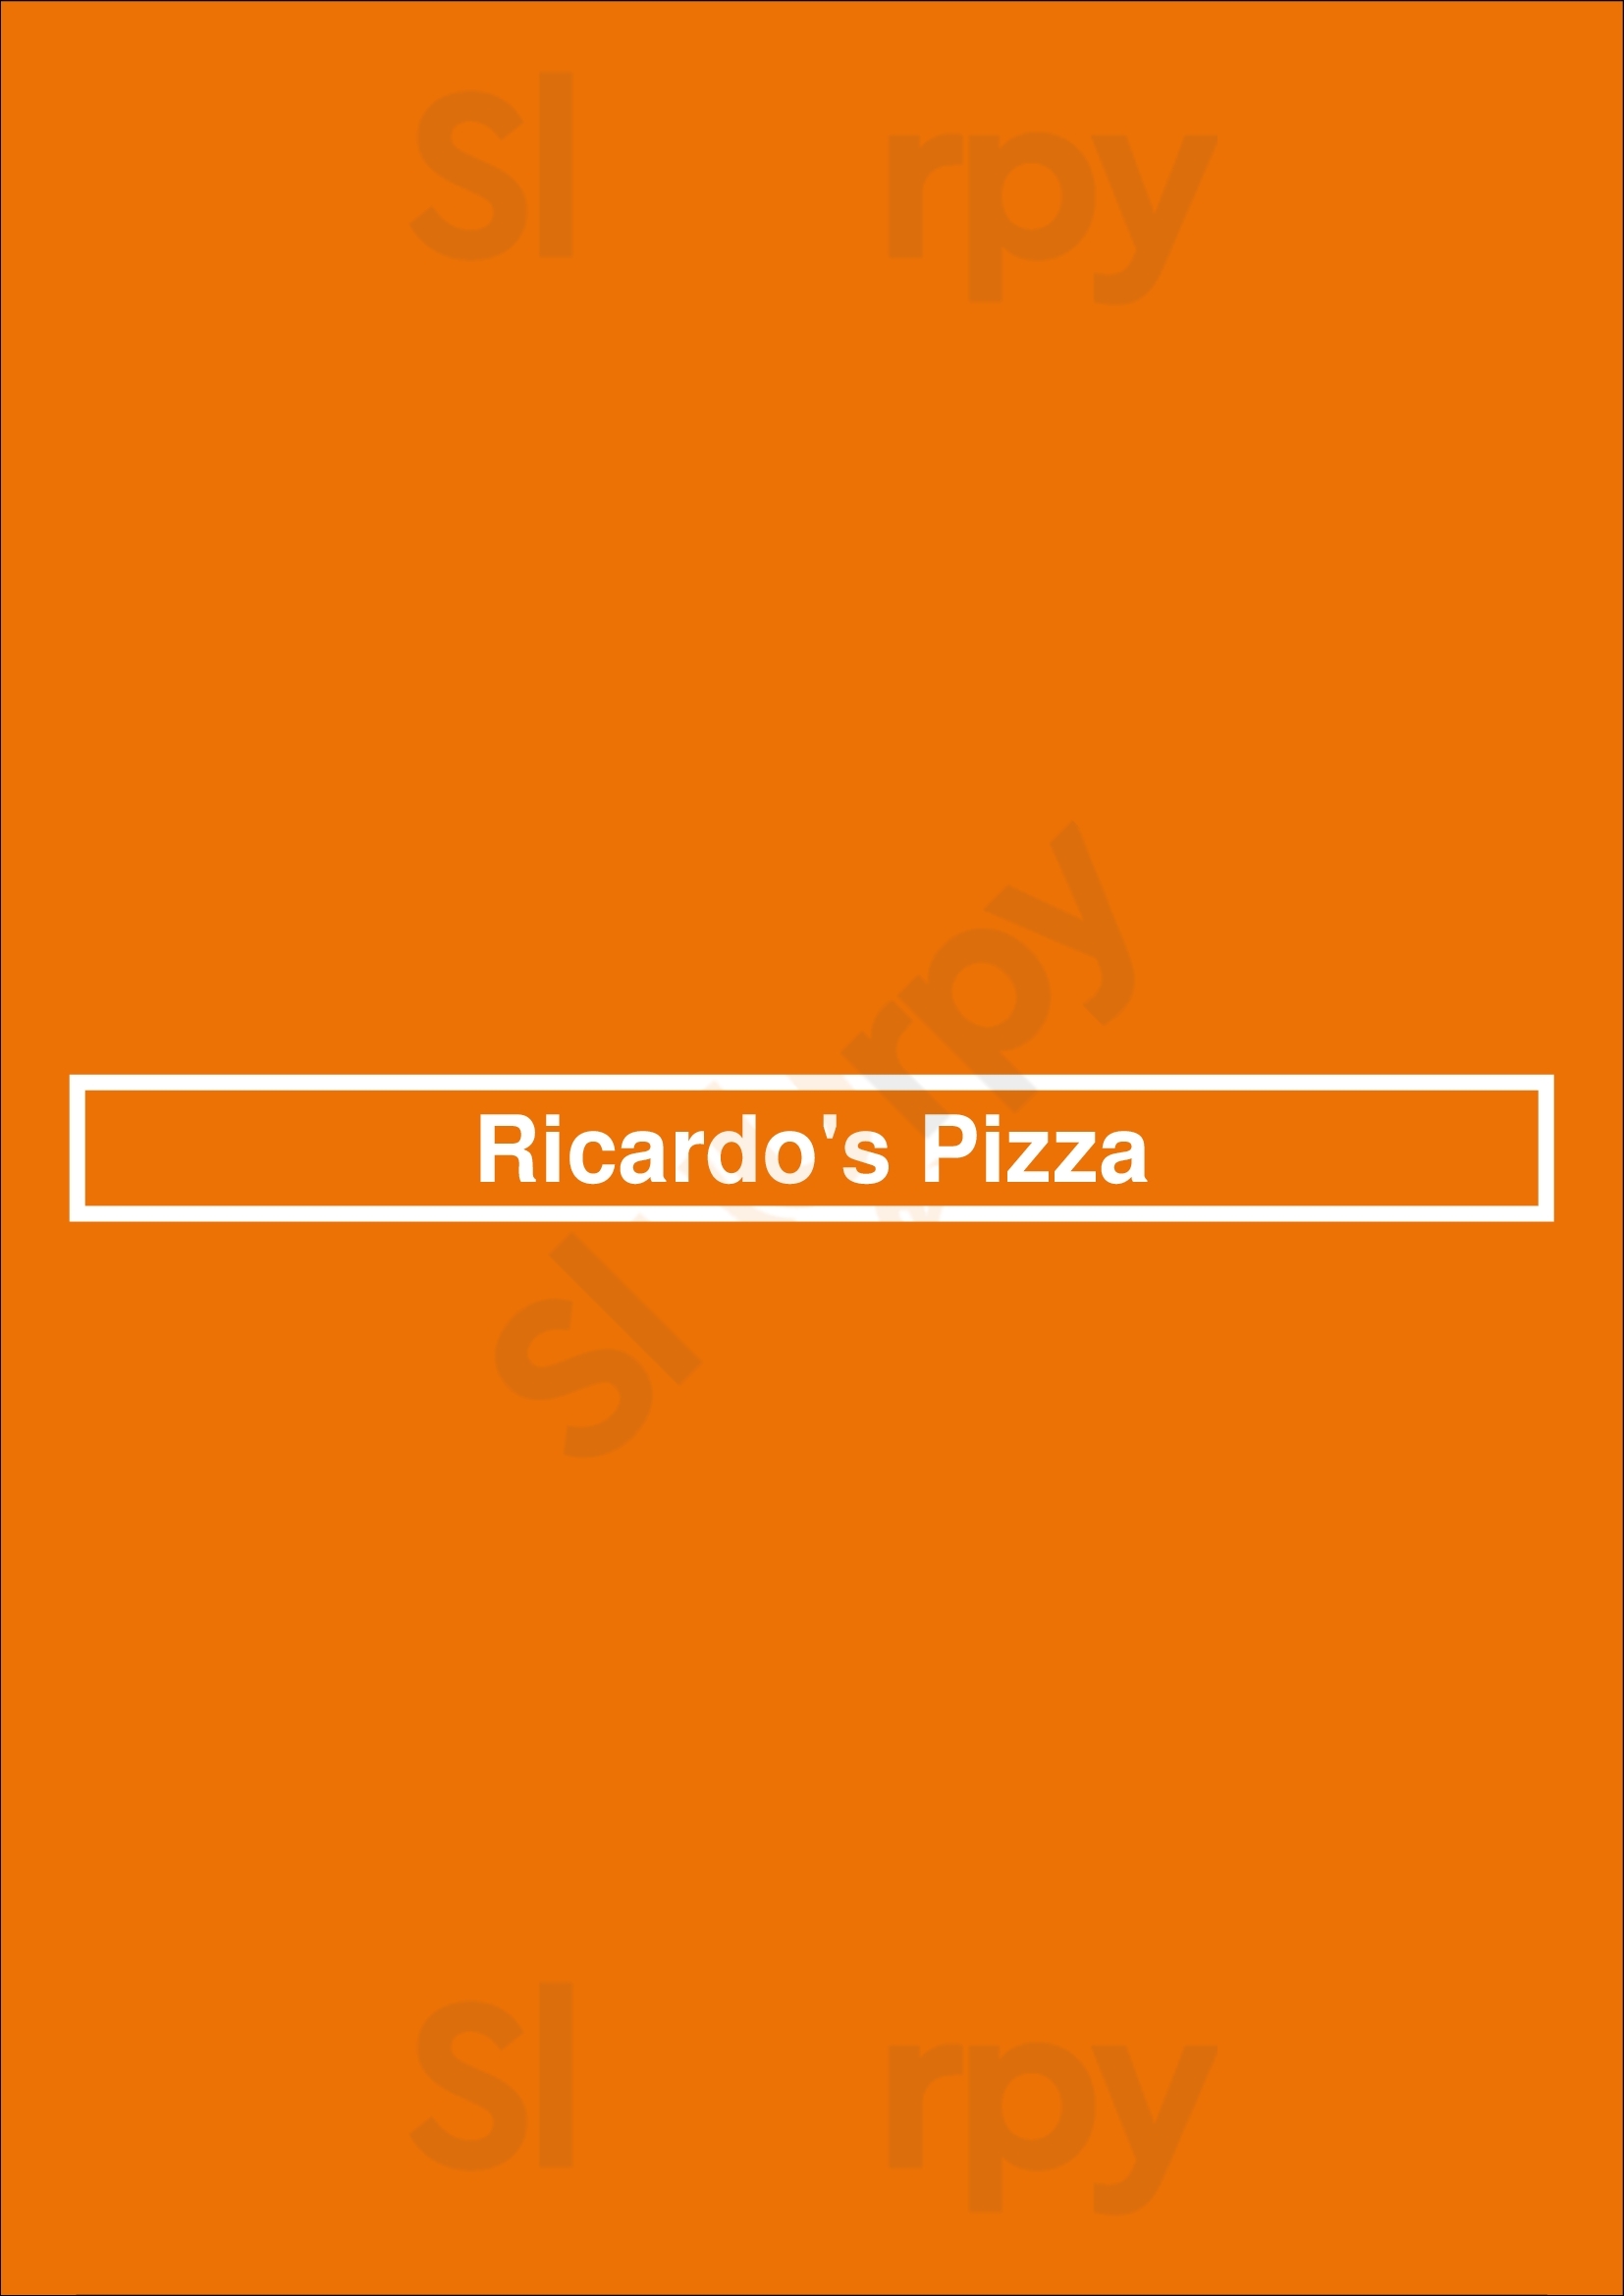 Ricardo's Pizza Langley Menu - 1